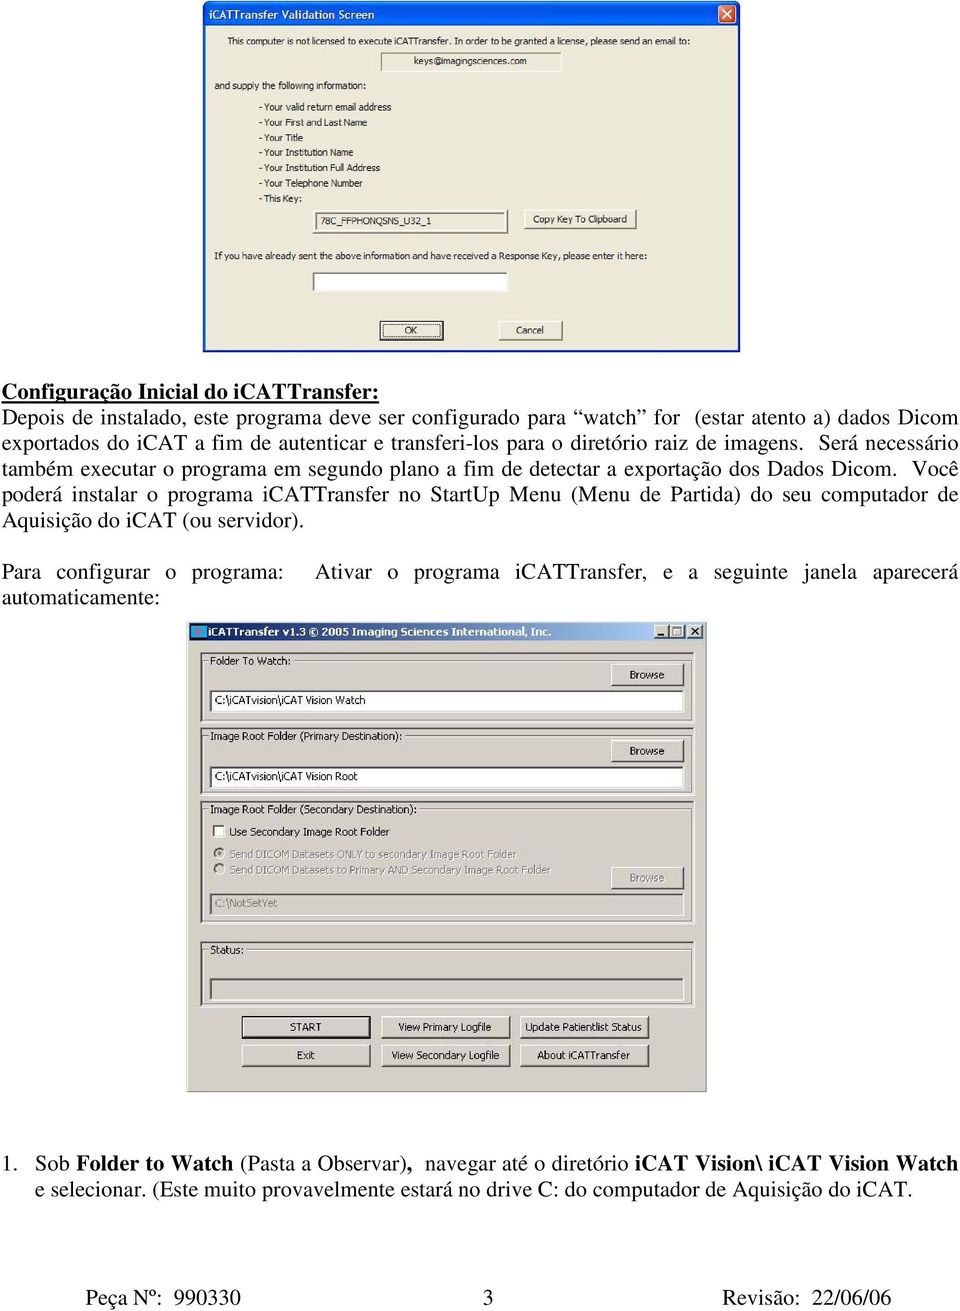 Você poderá instalar o programa icattransfer no StartUp Menu (Menu de Partida) do seu computador de Aquisição do icat (ou servidor).